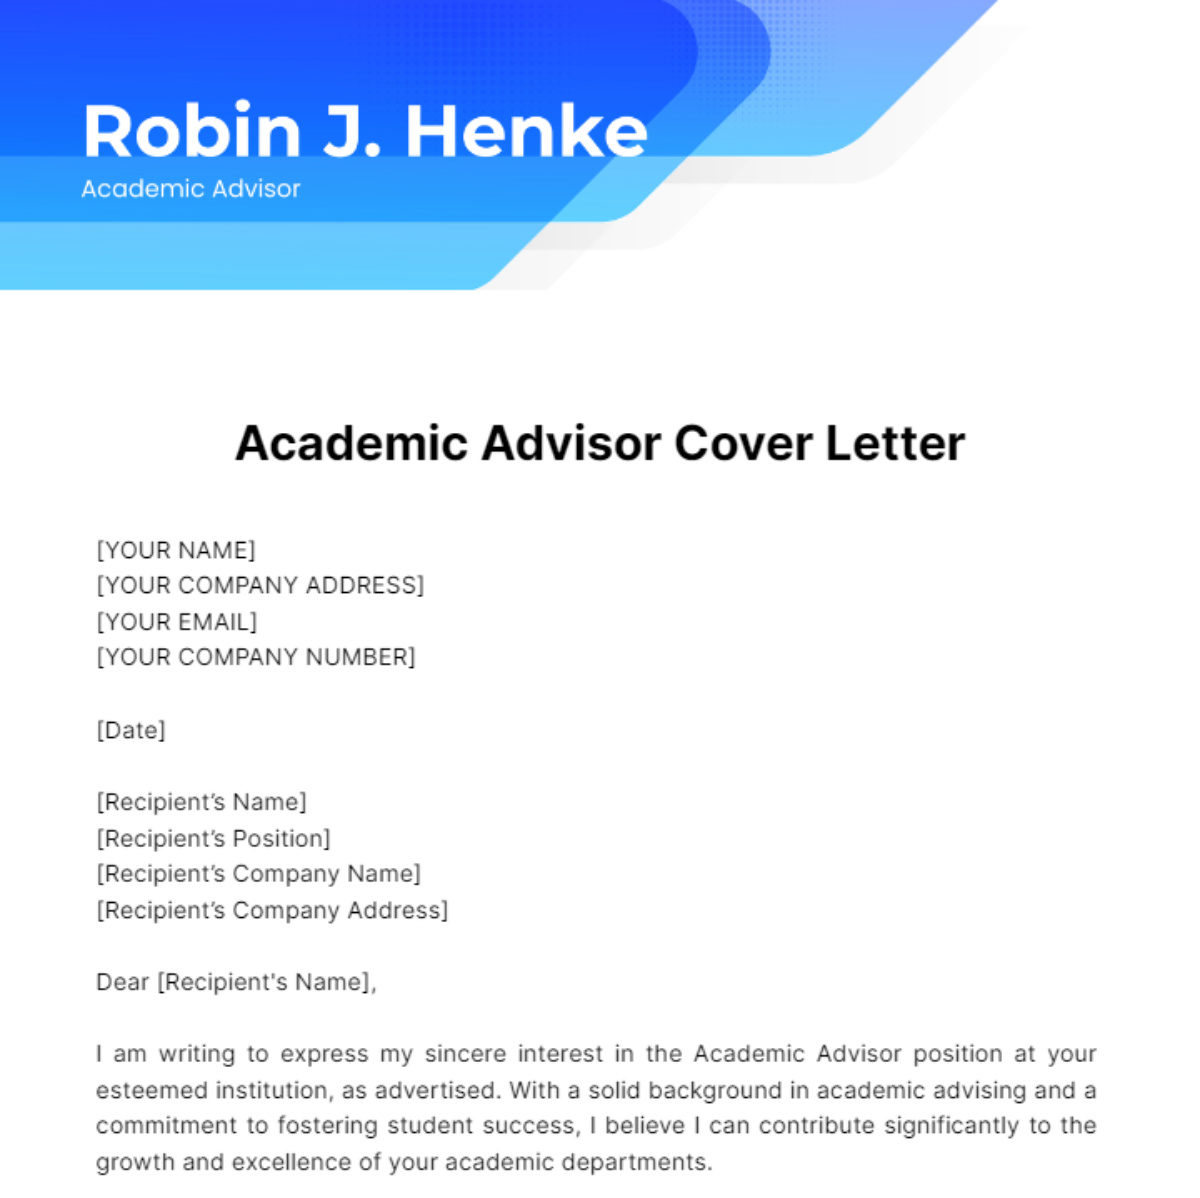 Academic Advisor Cover Letter Template